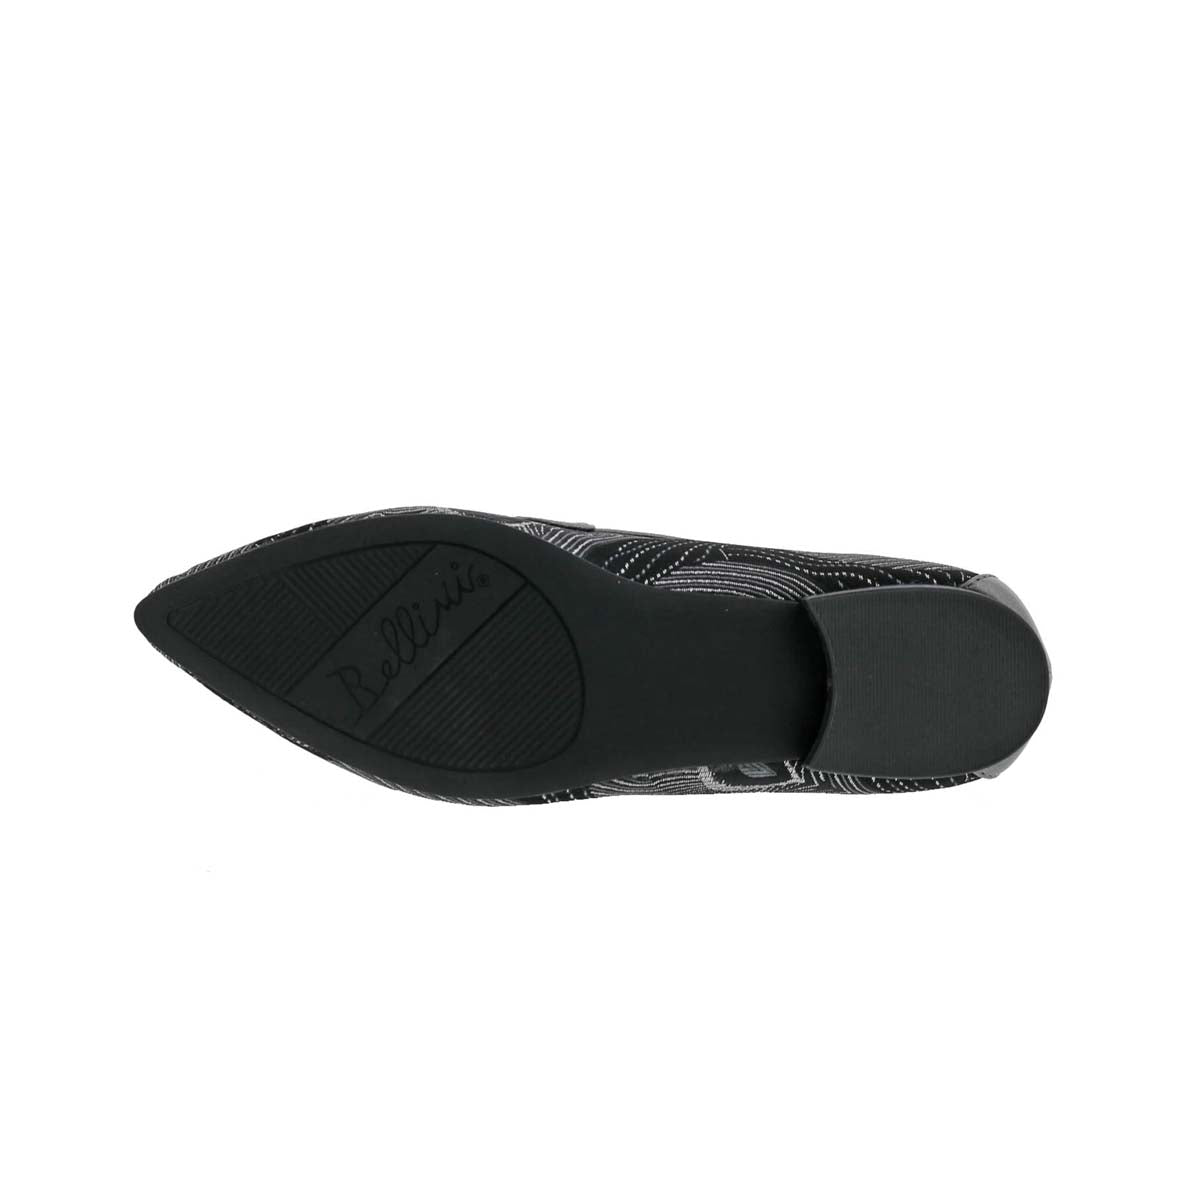 BELLINI FELIX WOMEN FLATS SLIP-ON SHOES IN BLACK SILVER COMBO - TLW Shoes